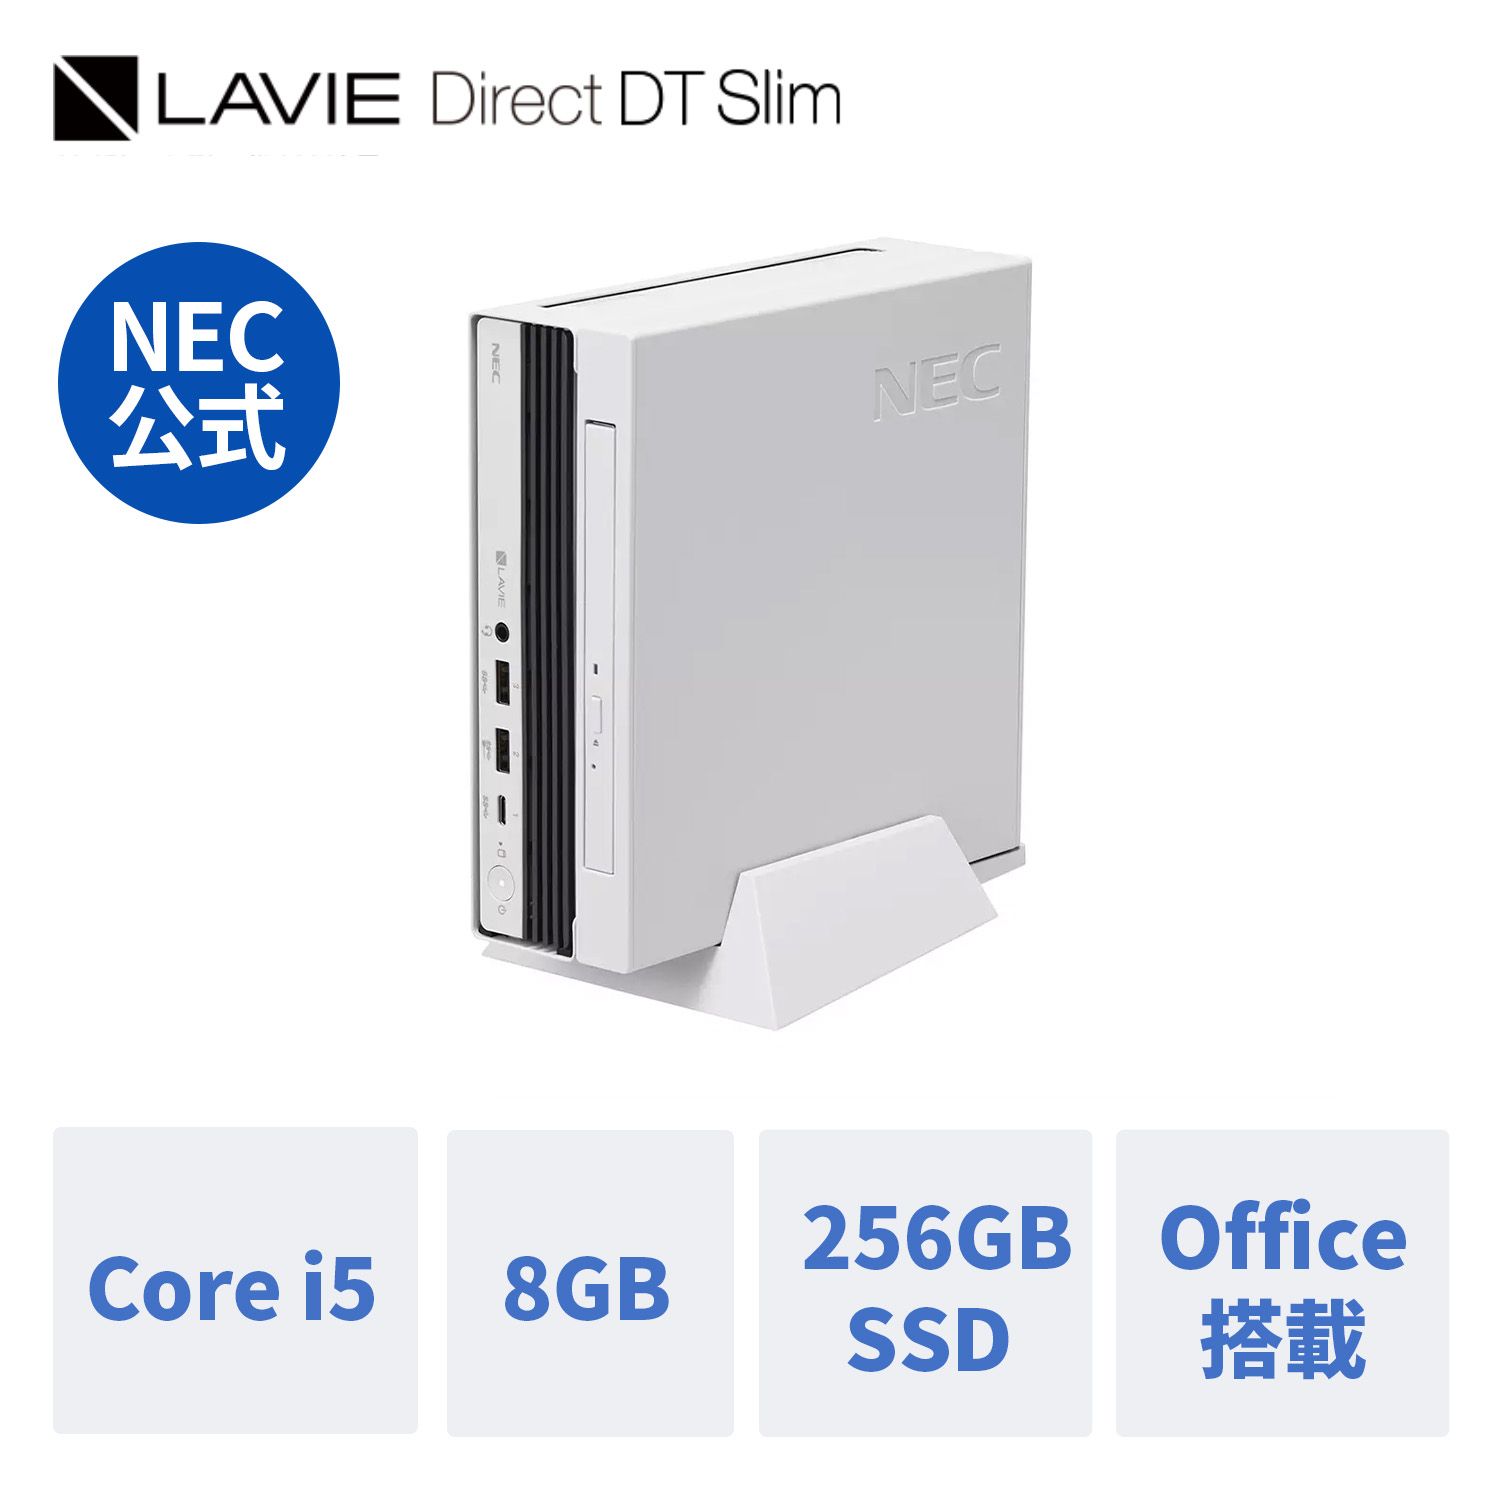 【Norton1】【DEAL10 】【公式】 新品 NEC ミニPC 小型 デスクトップパソコン office付き LAVIE Direct DTslim i5-13500T 8GBメモリ 256GB SSD 24インチ モニター Windows 11 Home 1年保証 送料無料 yxe